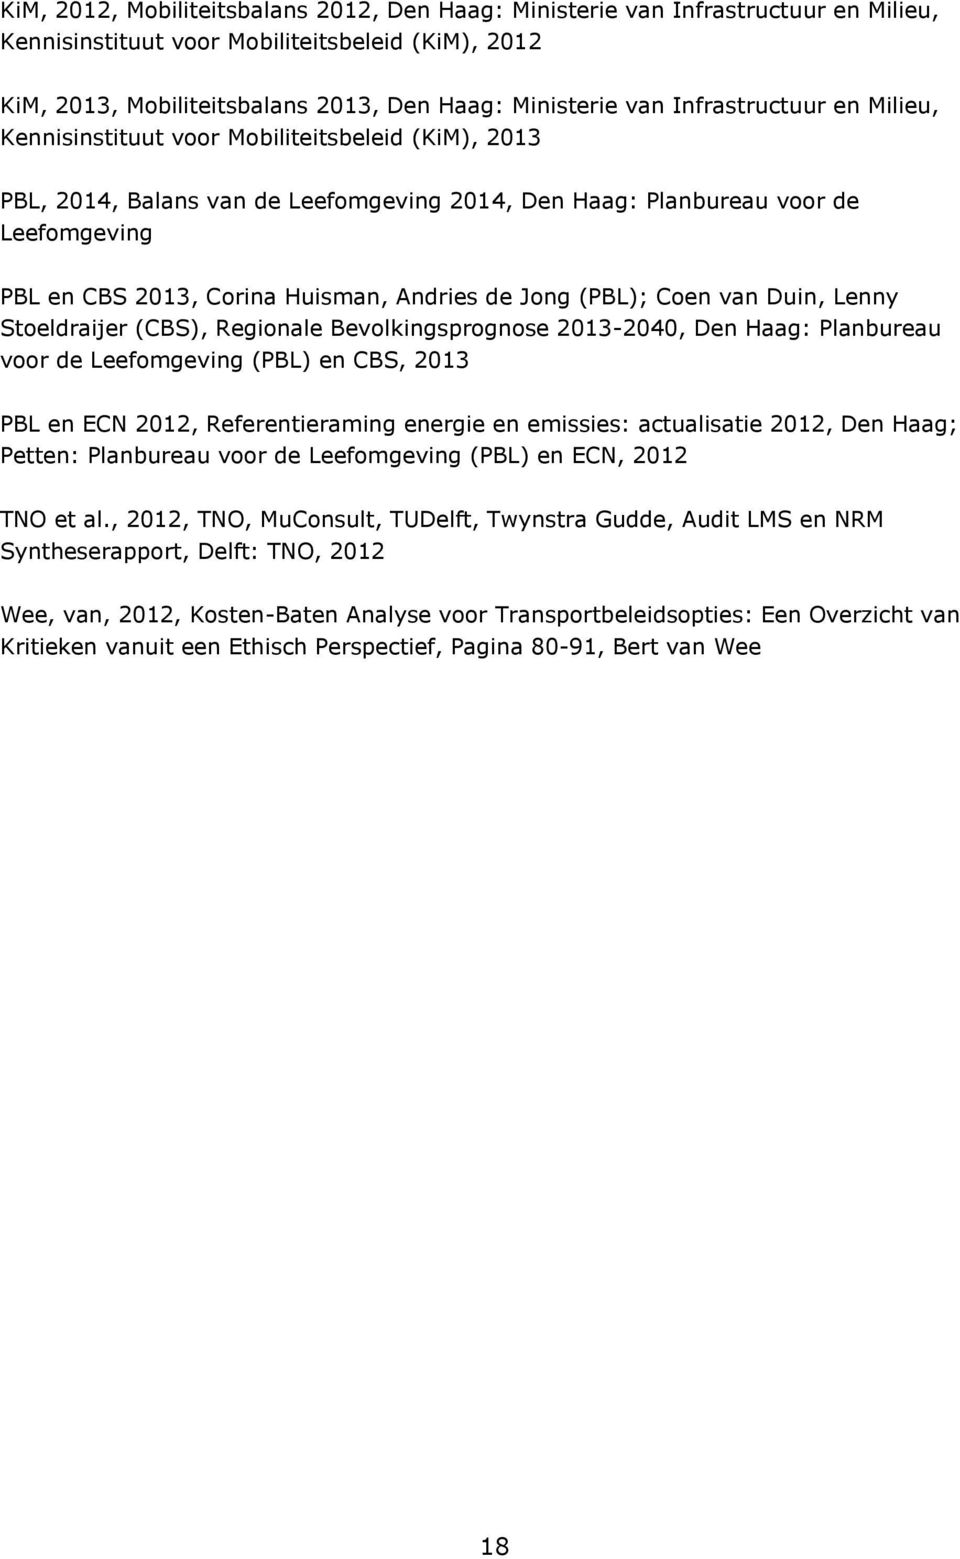 Andries de Jong (PBL); Coen van Duin, Lenny Stoeldraijer (CBS), Regionale Bevolkingsprognose 2013-2040, Den Haag: Planbureau voor de Leefomgeving (PBL) en CBS, 2013 PBL en ECN 2012, Referentieraming